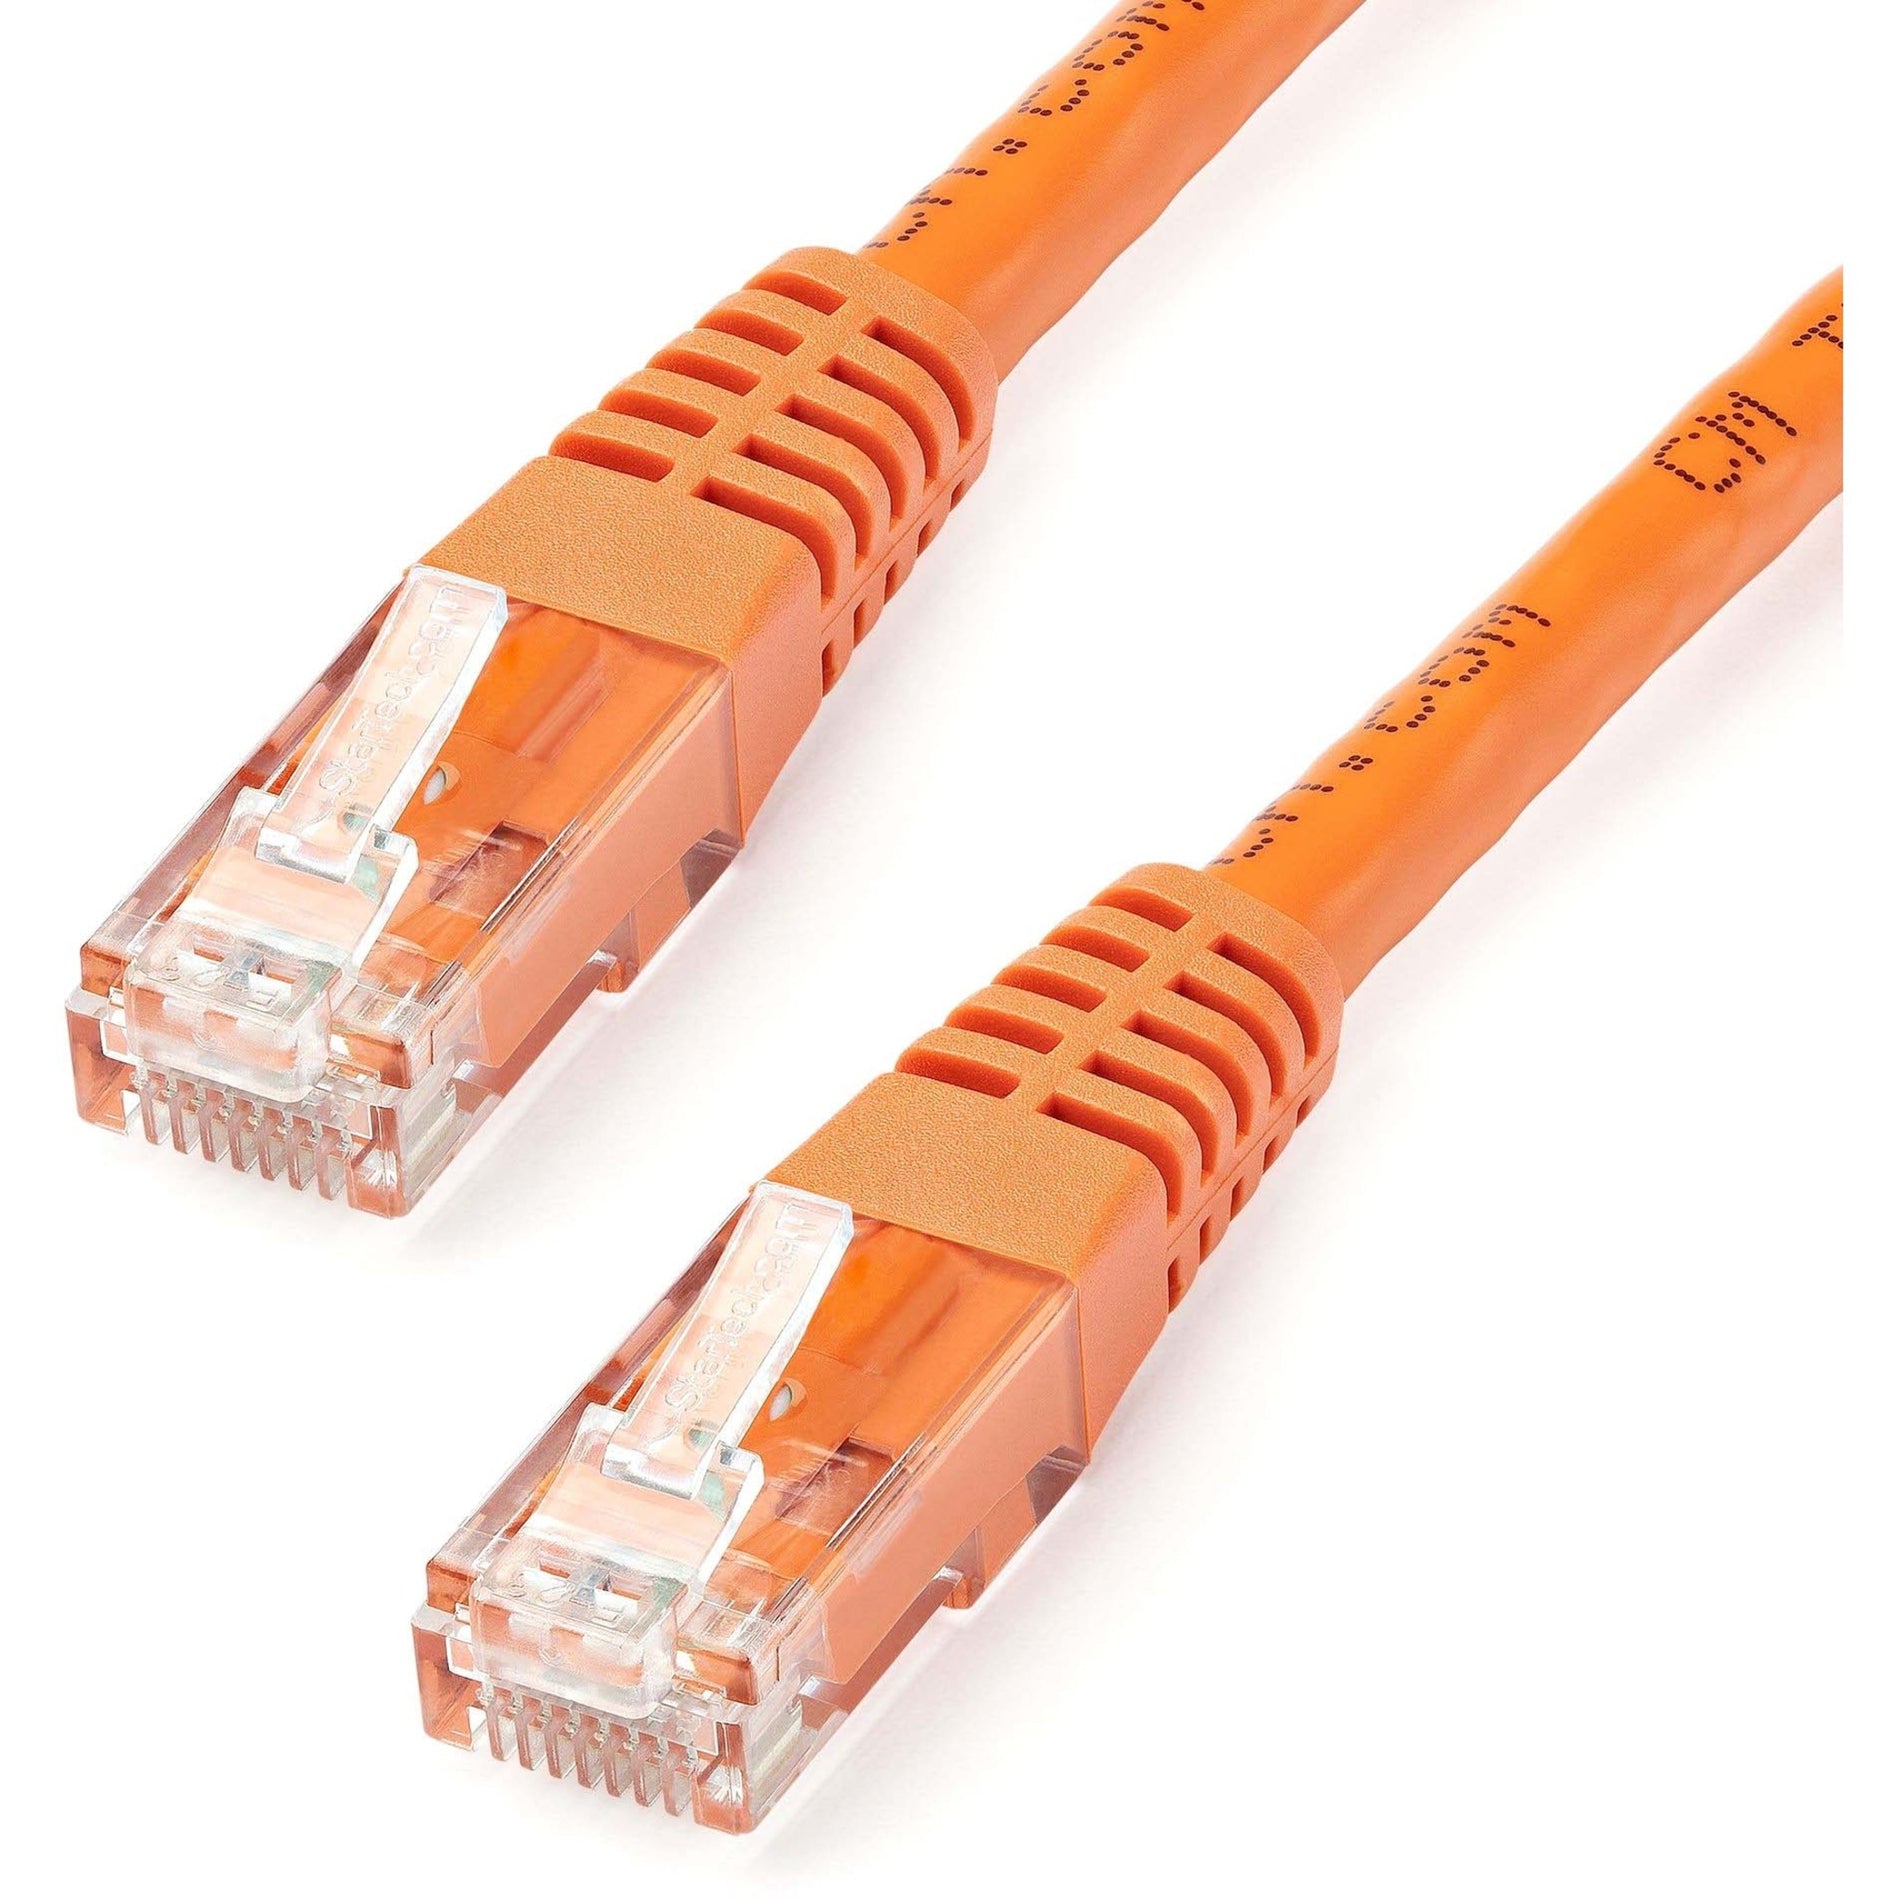 StarTech.com C6PATCH100OR 100ft Orange Cat6 UTP Patch Cable ETL Verified, Gigabit Ethernet Network Cord